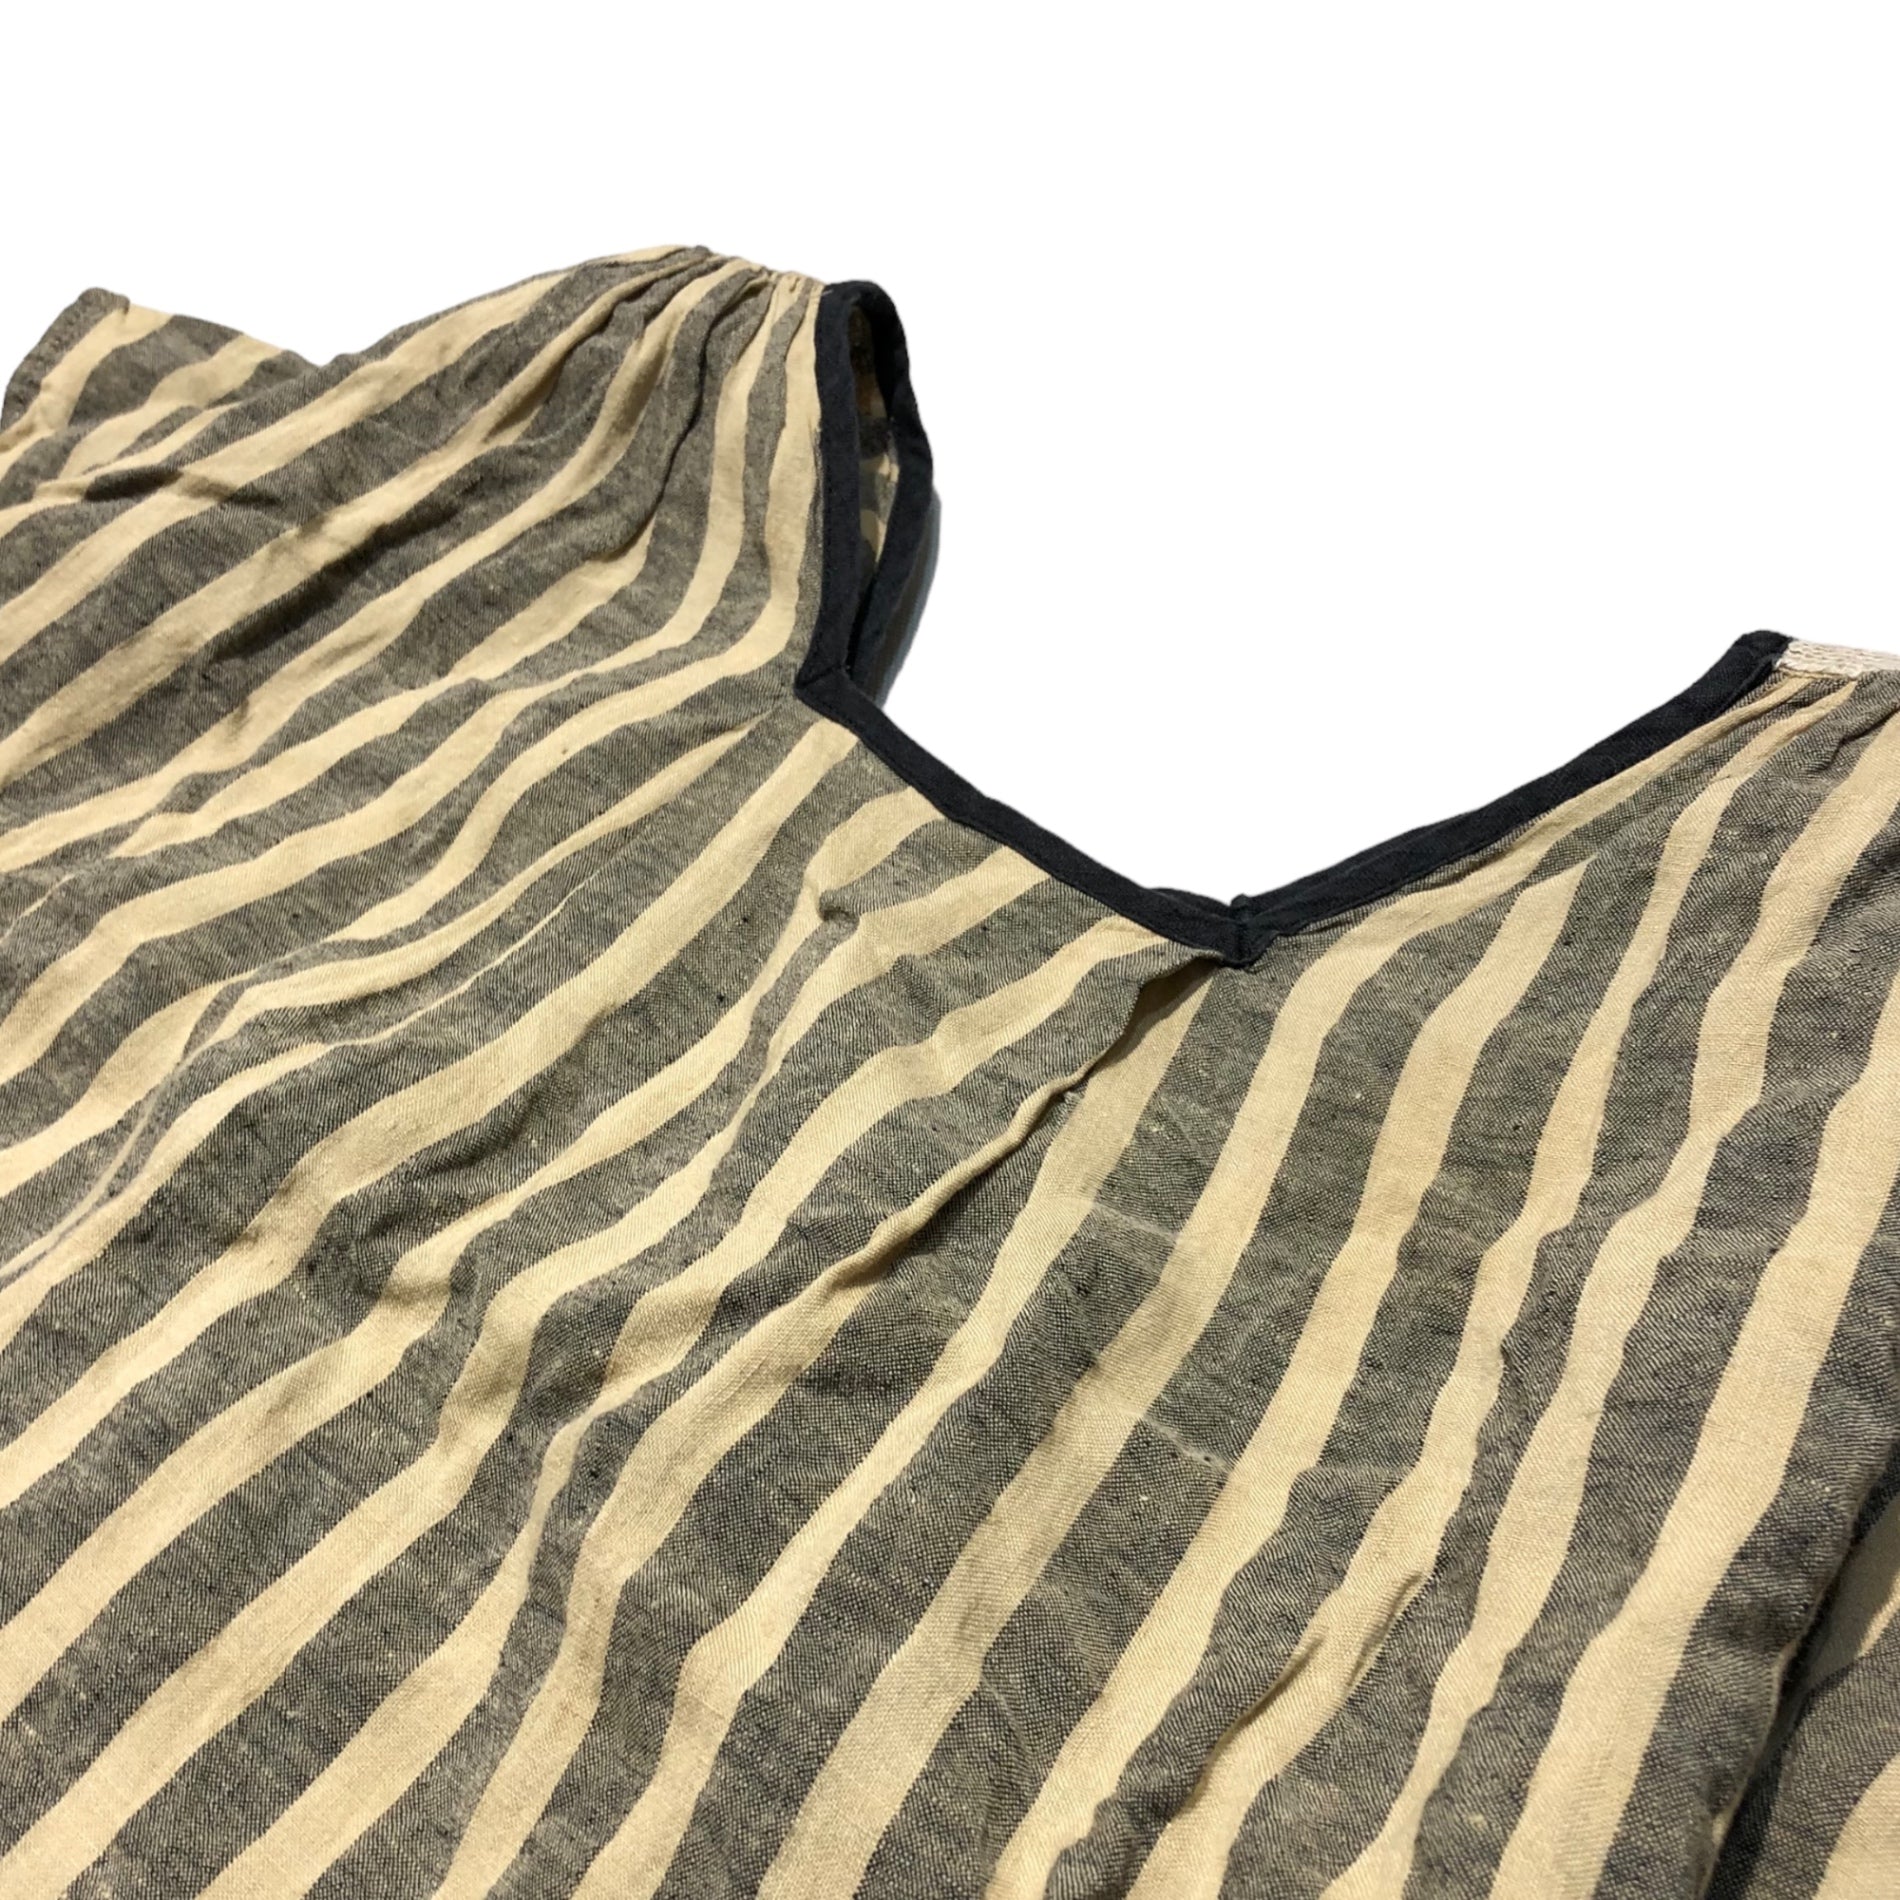 Tabrik(タブリク) sleeveless striped linen blouse スリーブレス ストライプ リネン ブラウス FREE ベージュ×ブラック